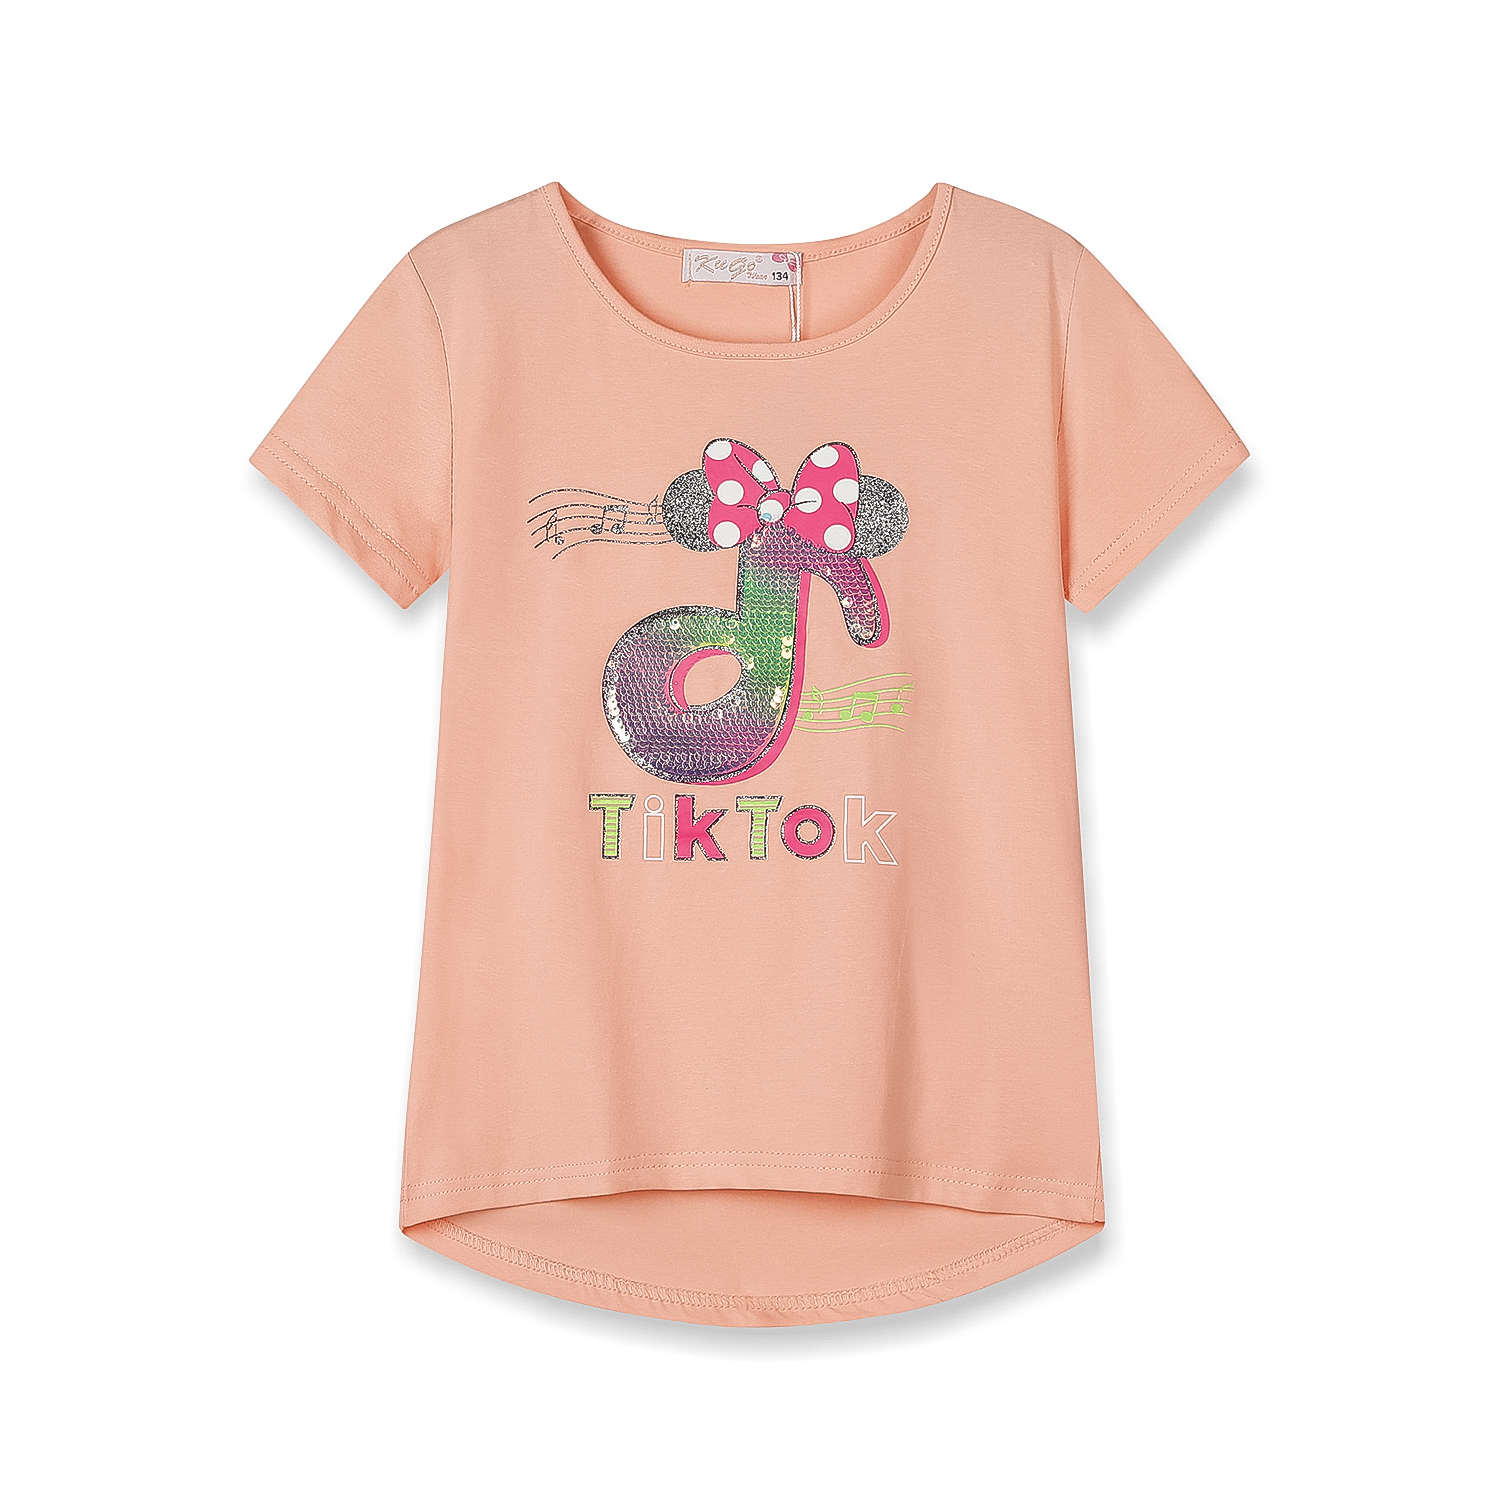 Dívčí triko s flitry - KUGO WK0803, lososová Barva: Lososová, Velikost: 122